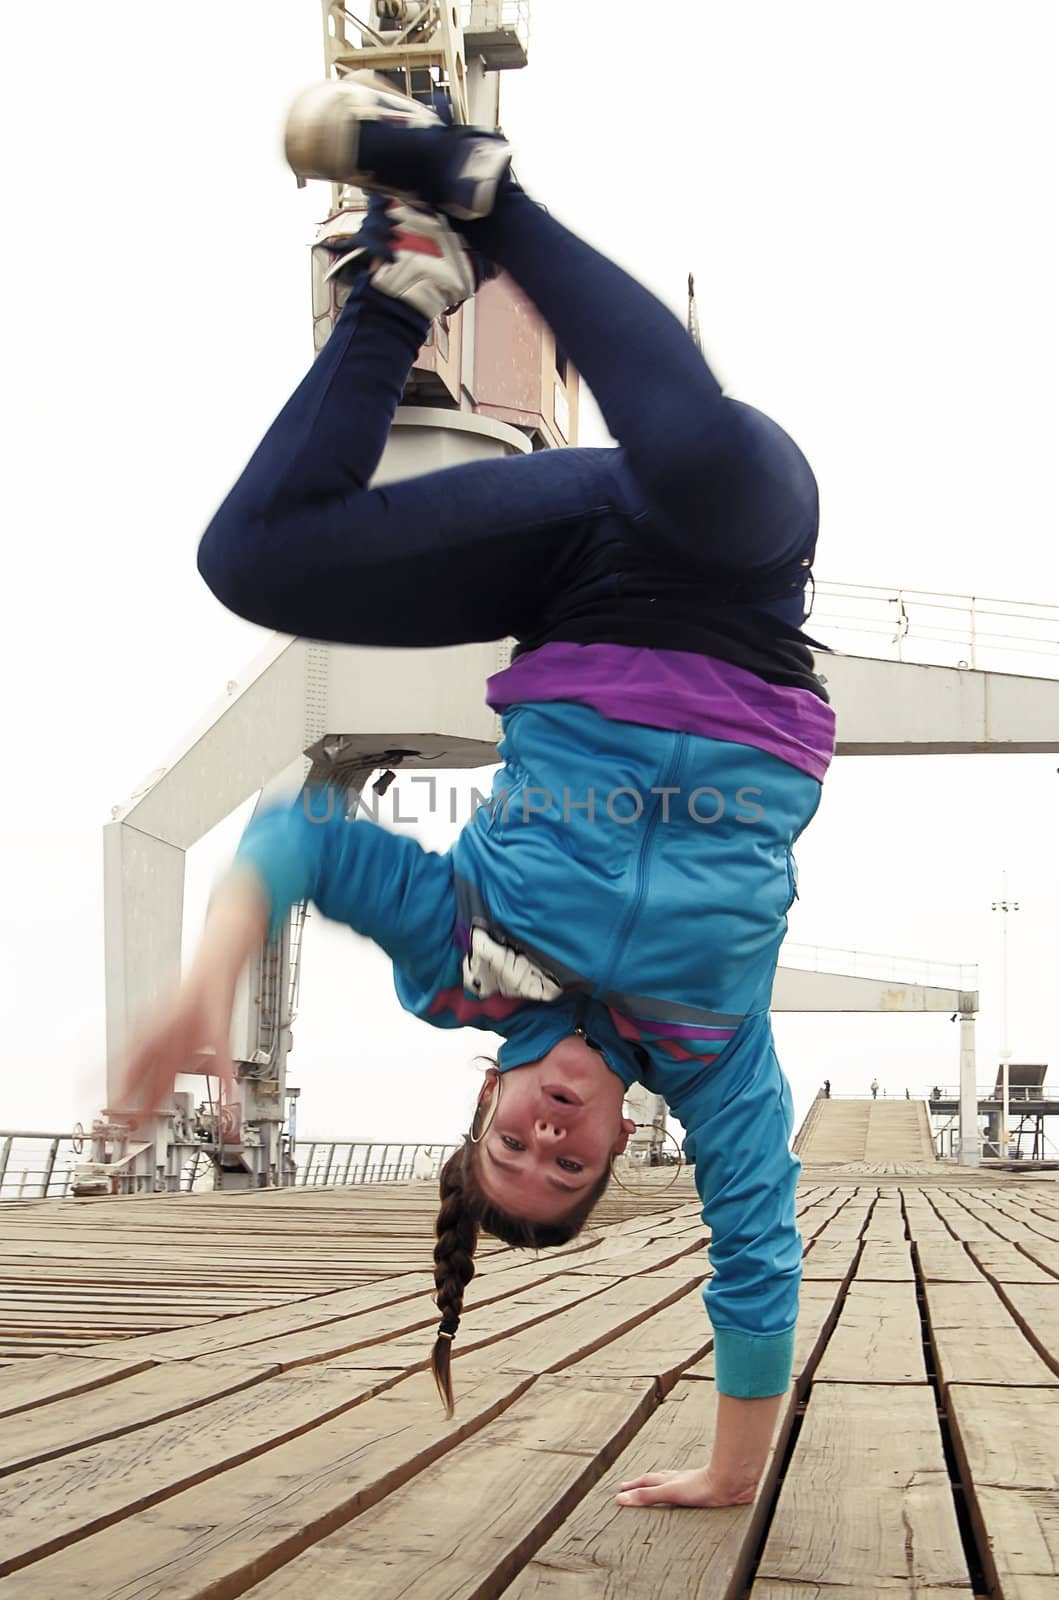 Breakdancer handstand on one hand by fxegs